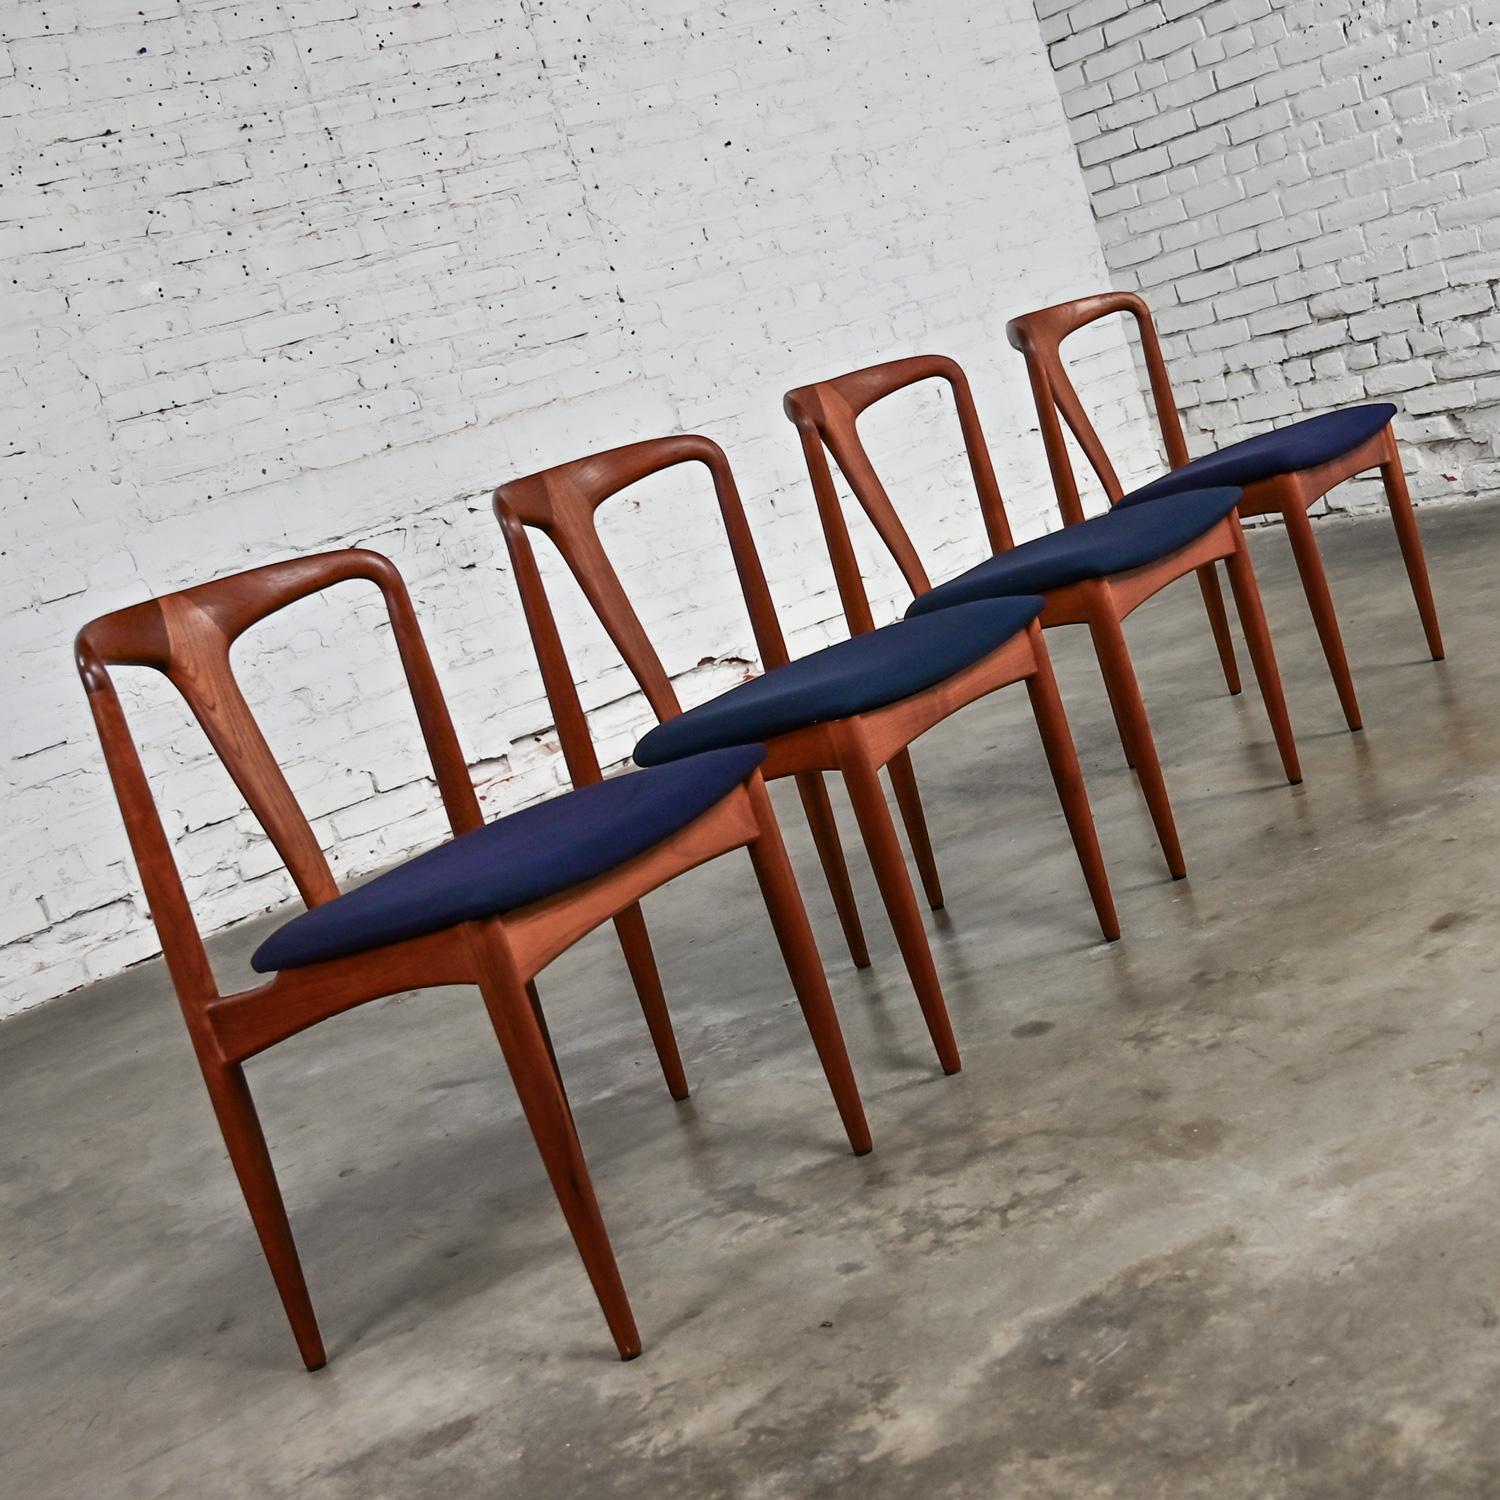 Merveilleuses chaises de salle à manger du milieu du siècle dernier de The Modern Scandinavian Attribué à Johannes Andersen Chaise Juliane, ensemble de 4 chaises composées d'un cadre en teck et d'une nouvelle assise en toile noire. Cette pièce a été